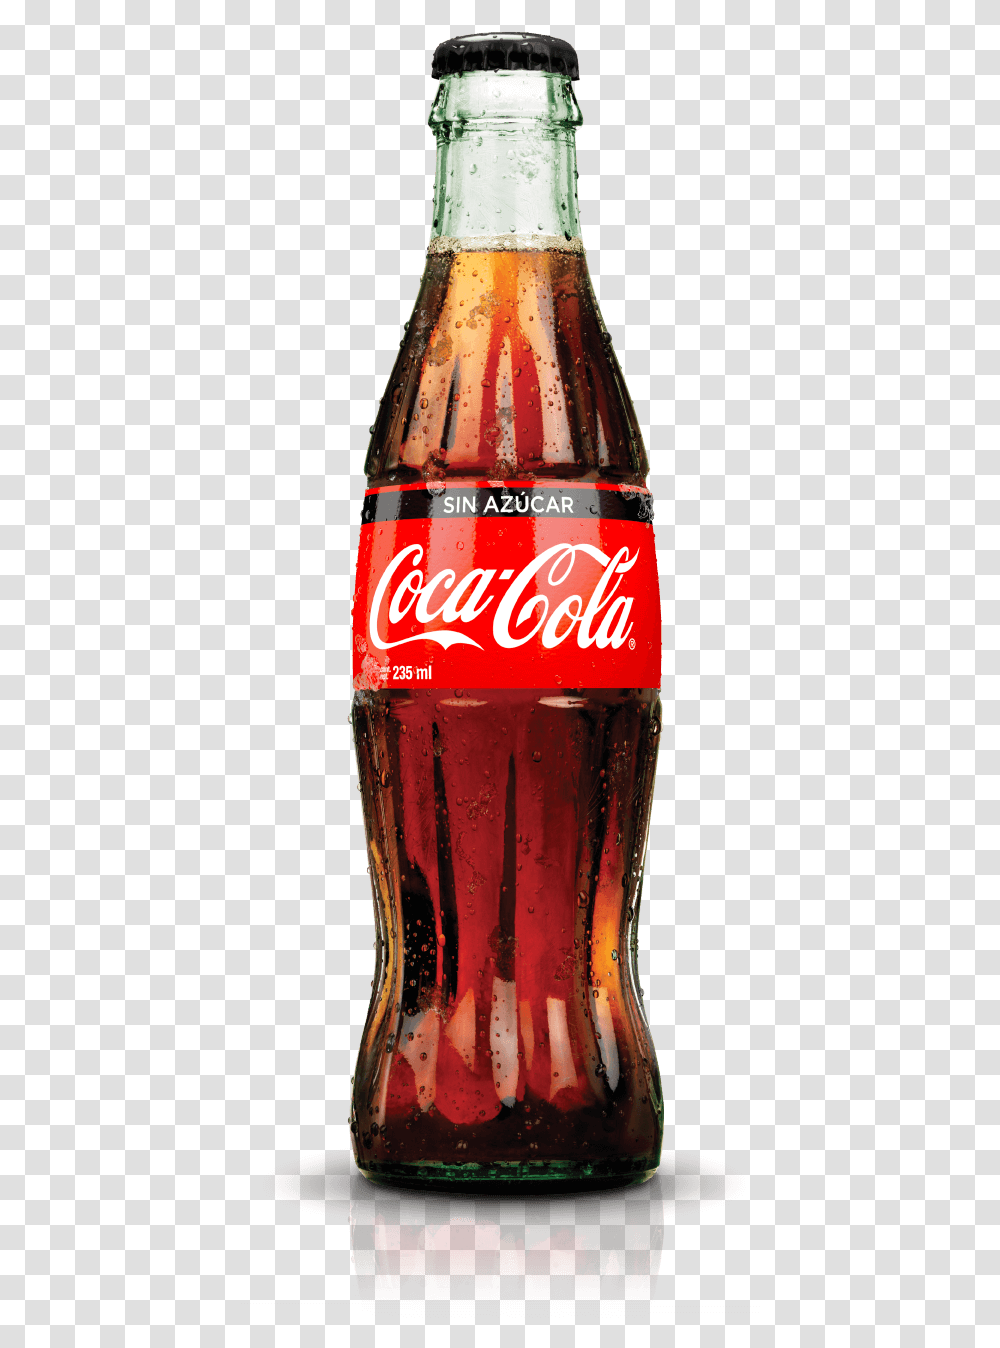 Diet Coke Bottle Coca Cola Bottle, Beverage, Drink, Soda Transparent Png